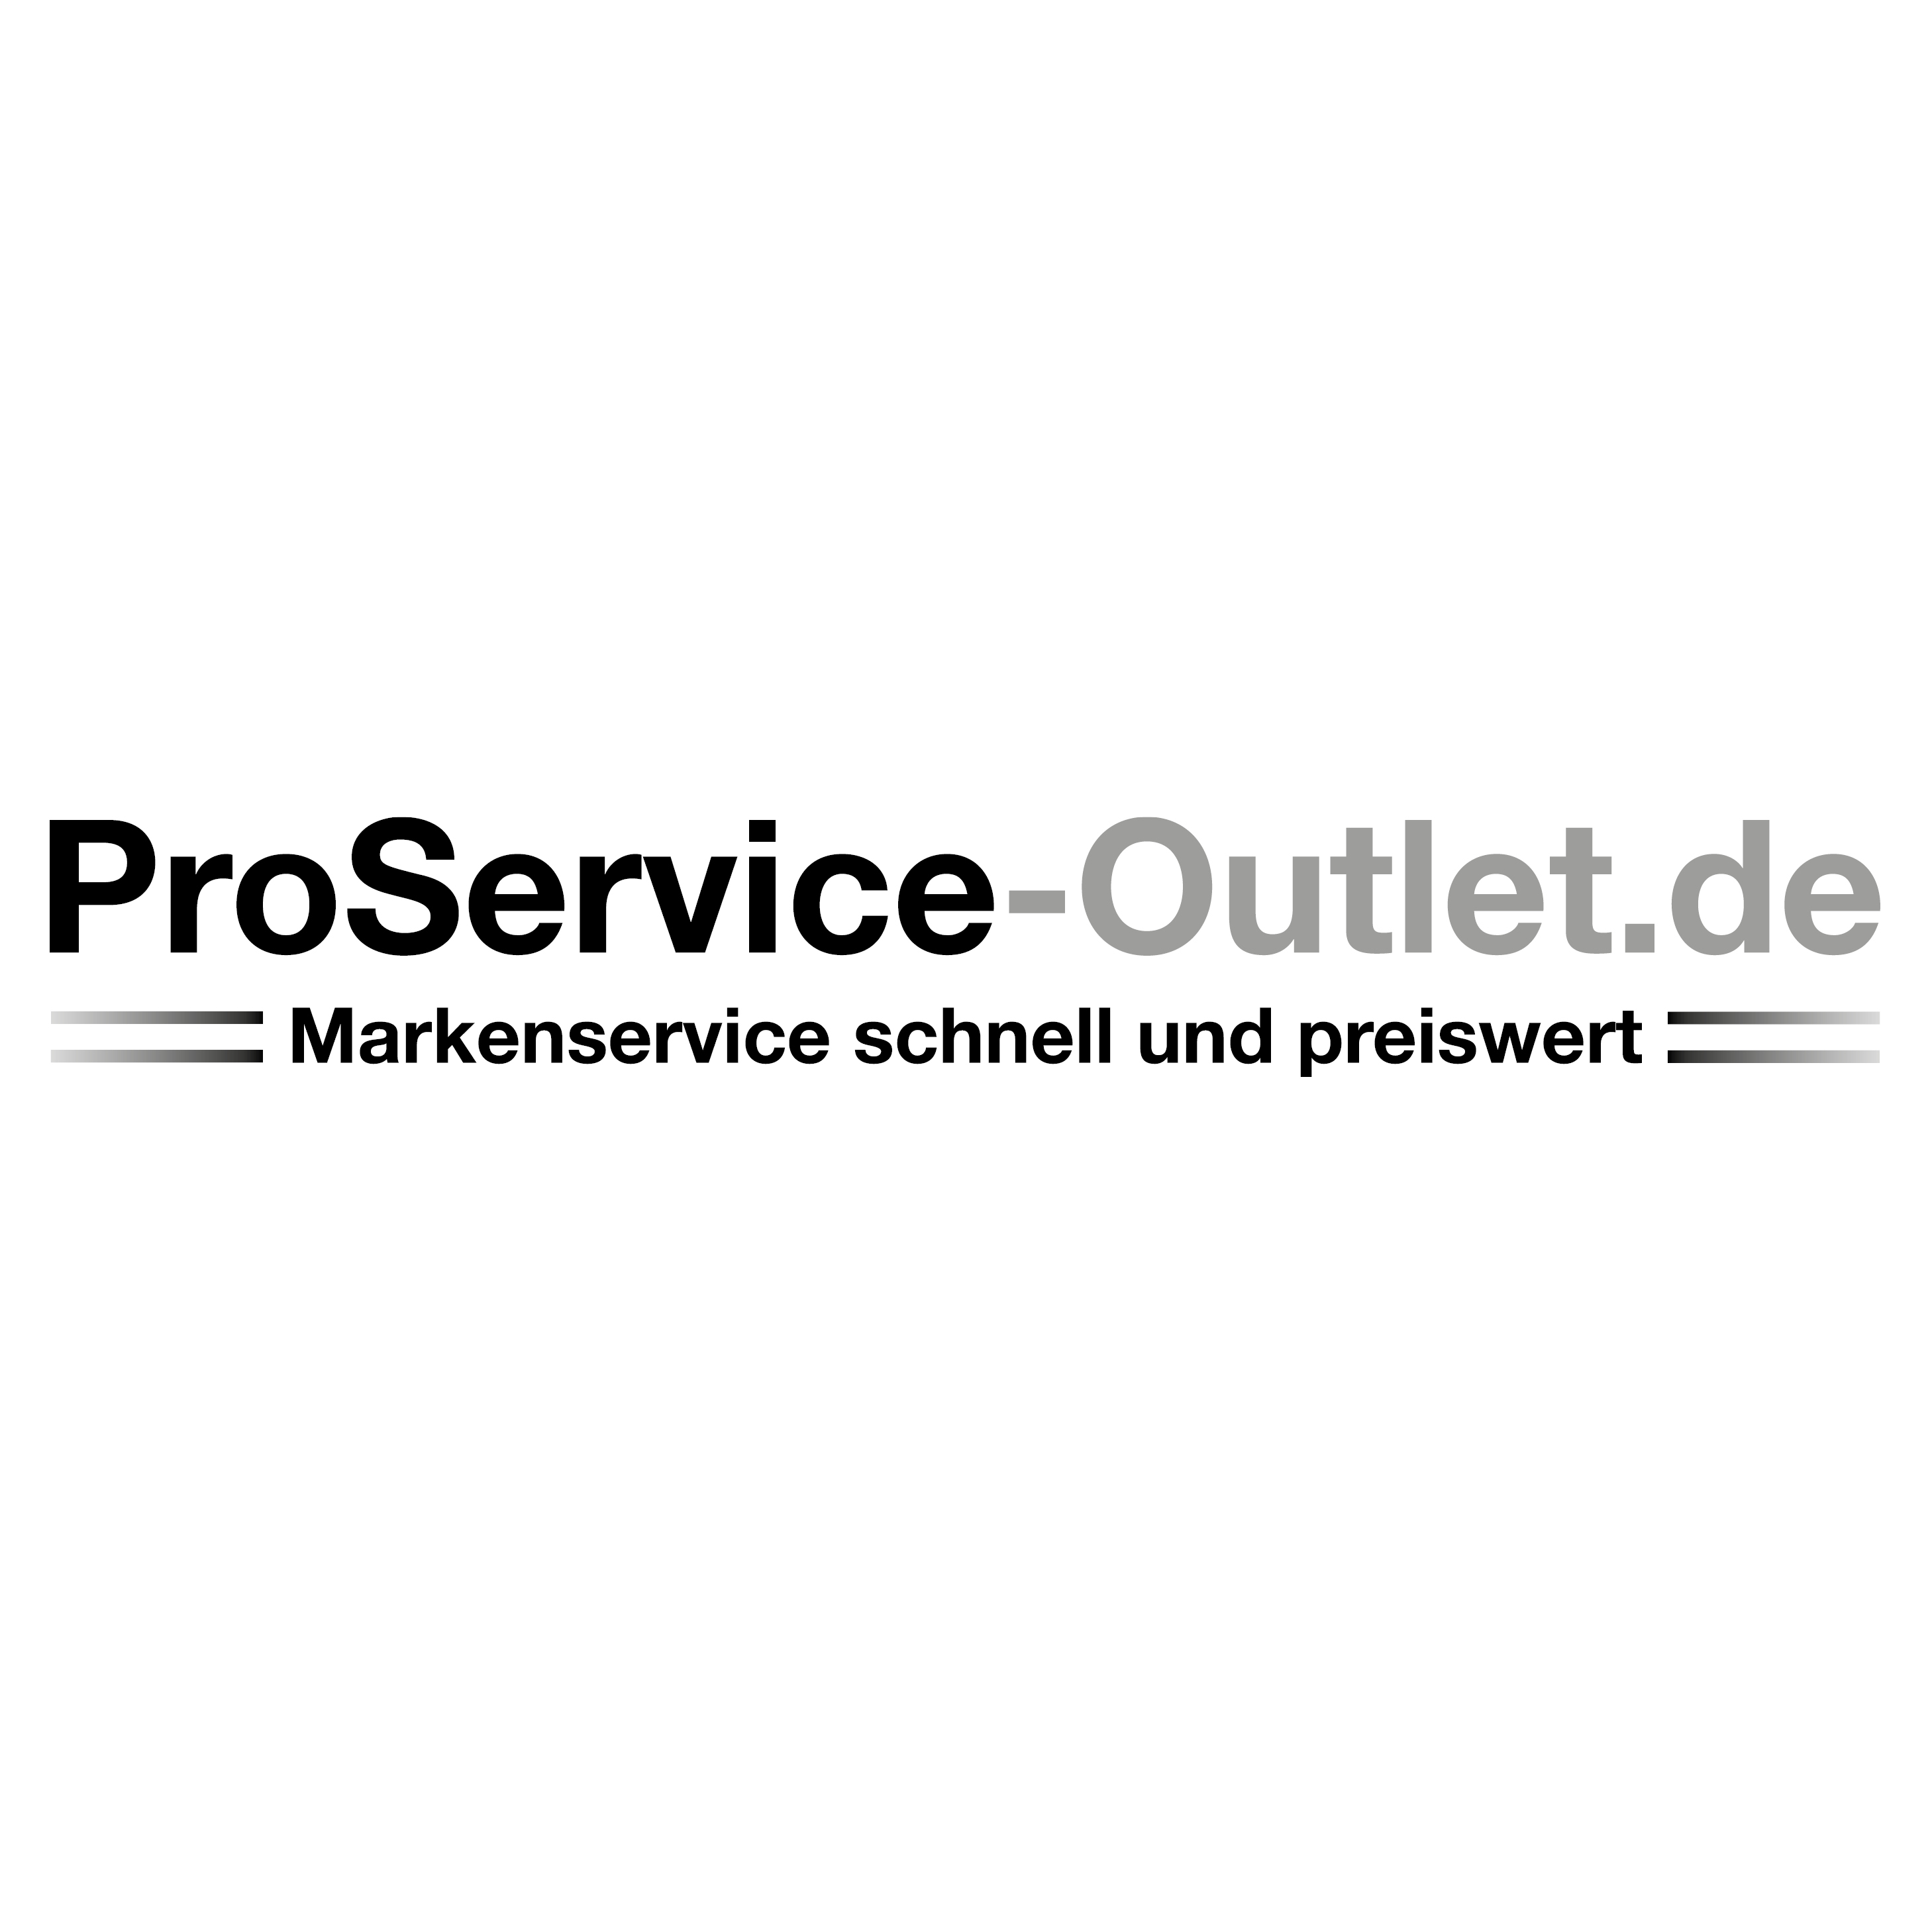 Logo Proservice Outlet Hagen